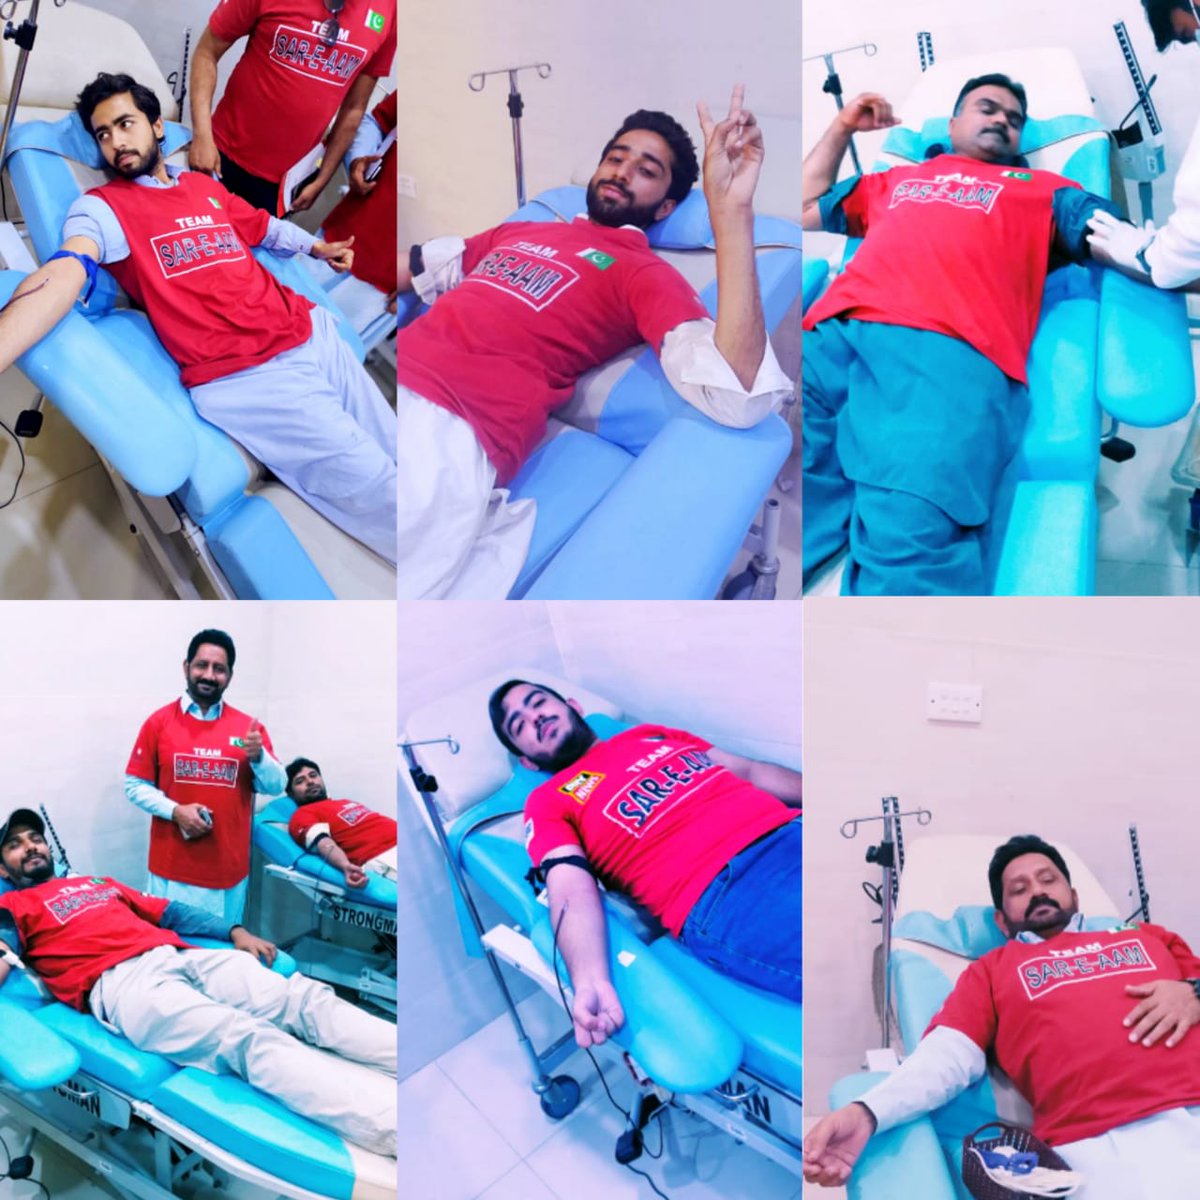 ٹیم سرعام سندھ کے 10 بڑے شہر جہاں خون عطیہ کررہے ہیں وہاں لاڑکانہ(سندھ) کی ٹیم سرعام کے جانبازوں نے بھی اپنا خون تھلیسیمیا کے مریض بچوں کے لیے عطیہ کیا اللہ پاک اس کاوش کو قبول فرمائے آمین۔ #WePromiseThat @Iqrarulhassan @KamranUmerFaro1